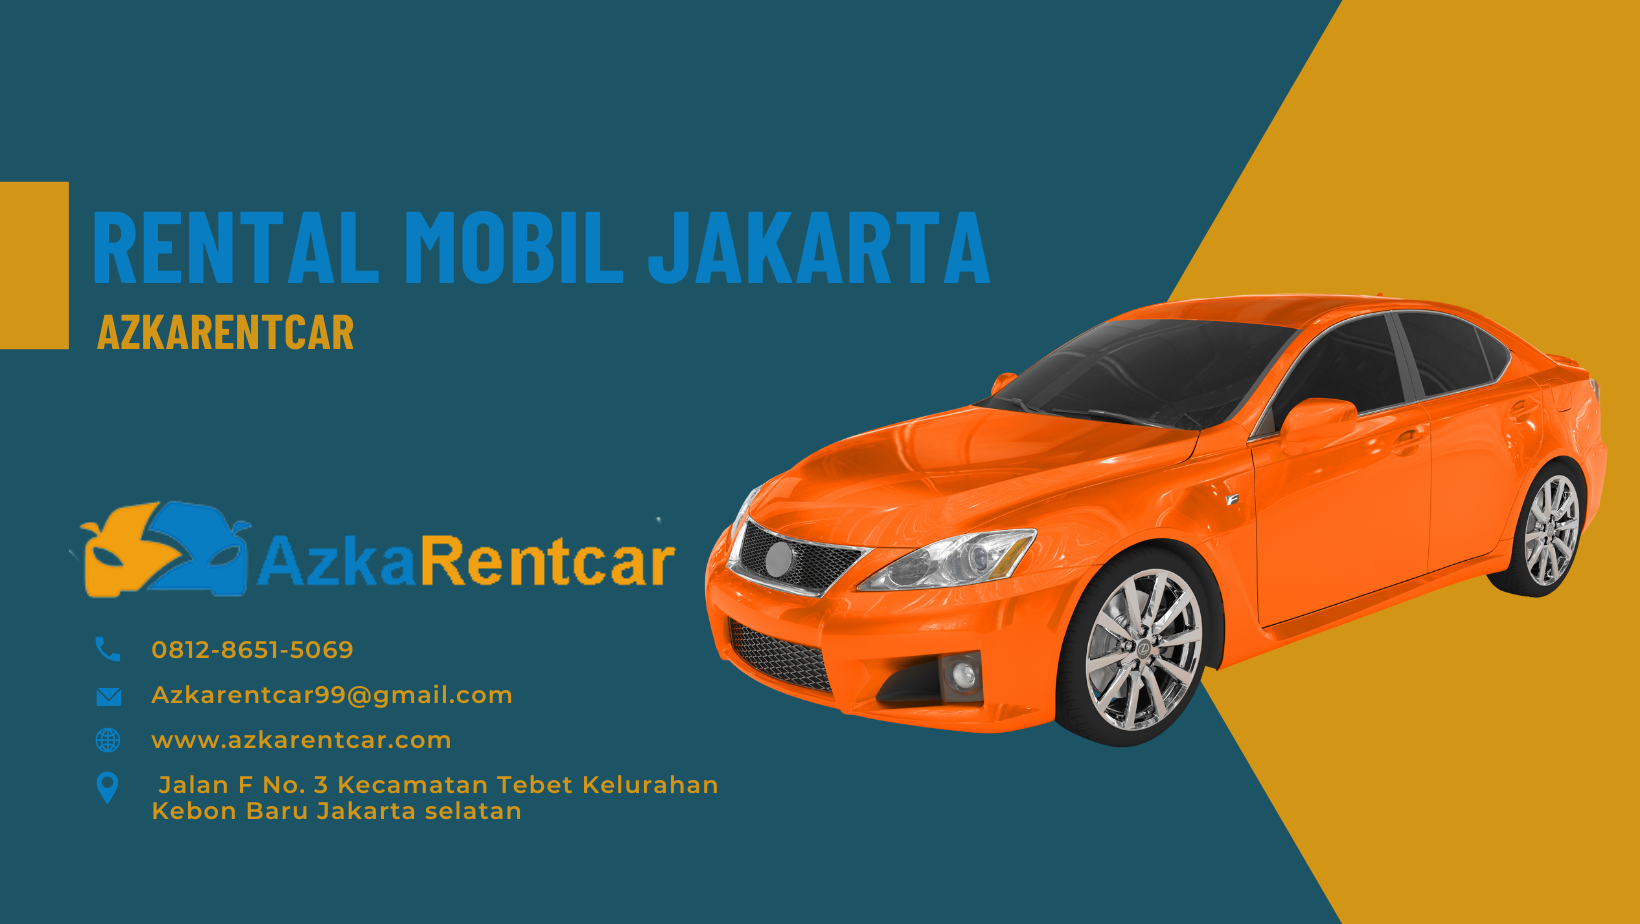 Cara Memilih Rental Mobil Jakarta Untuk Liburan Bersama Keluarga 1